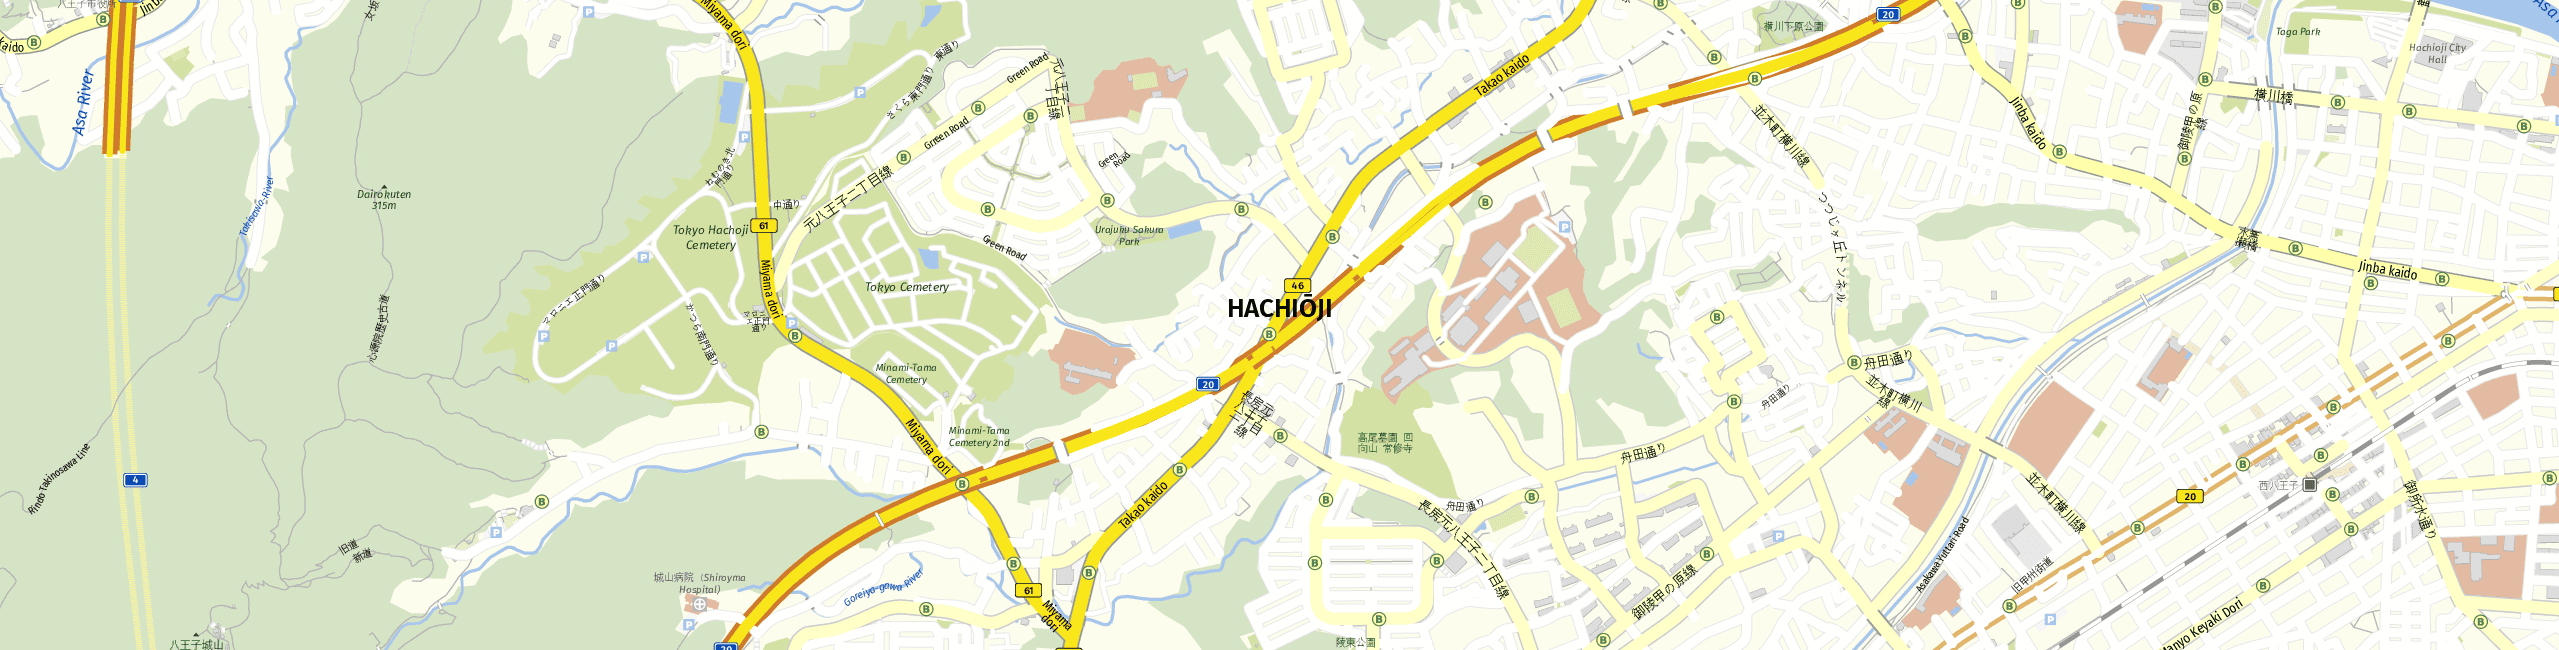 Stadtplan Hachioji zum Downloaden.